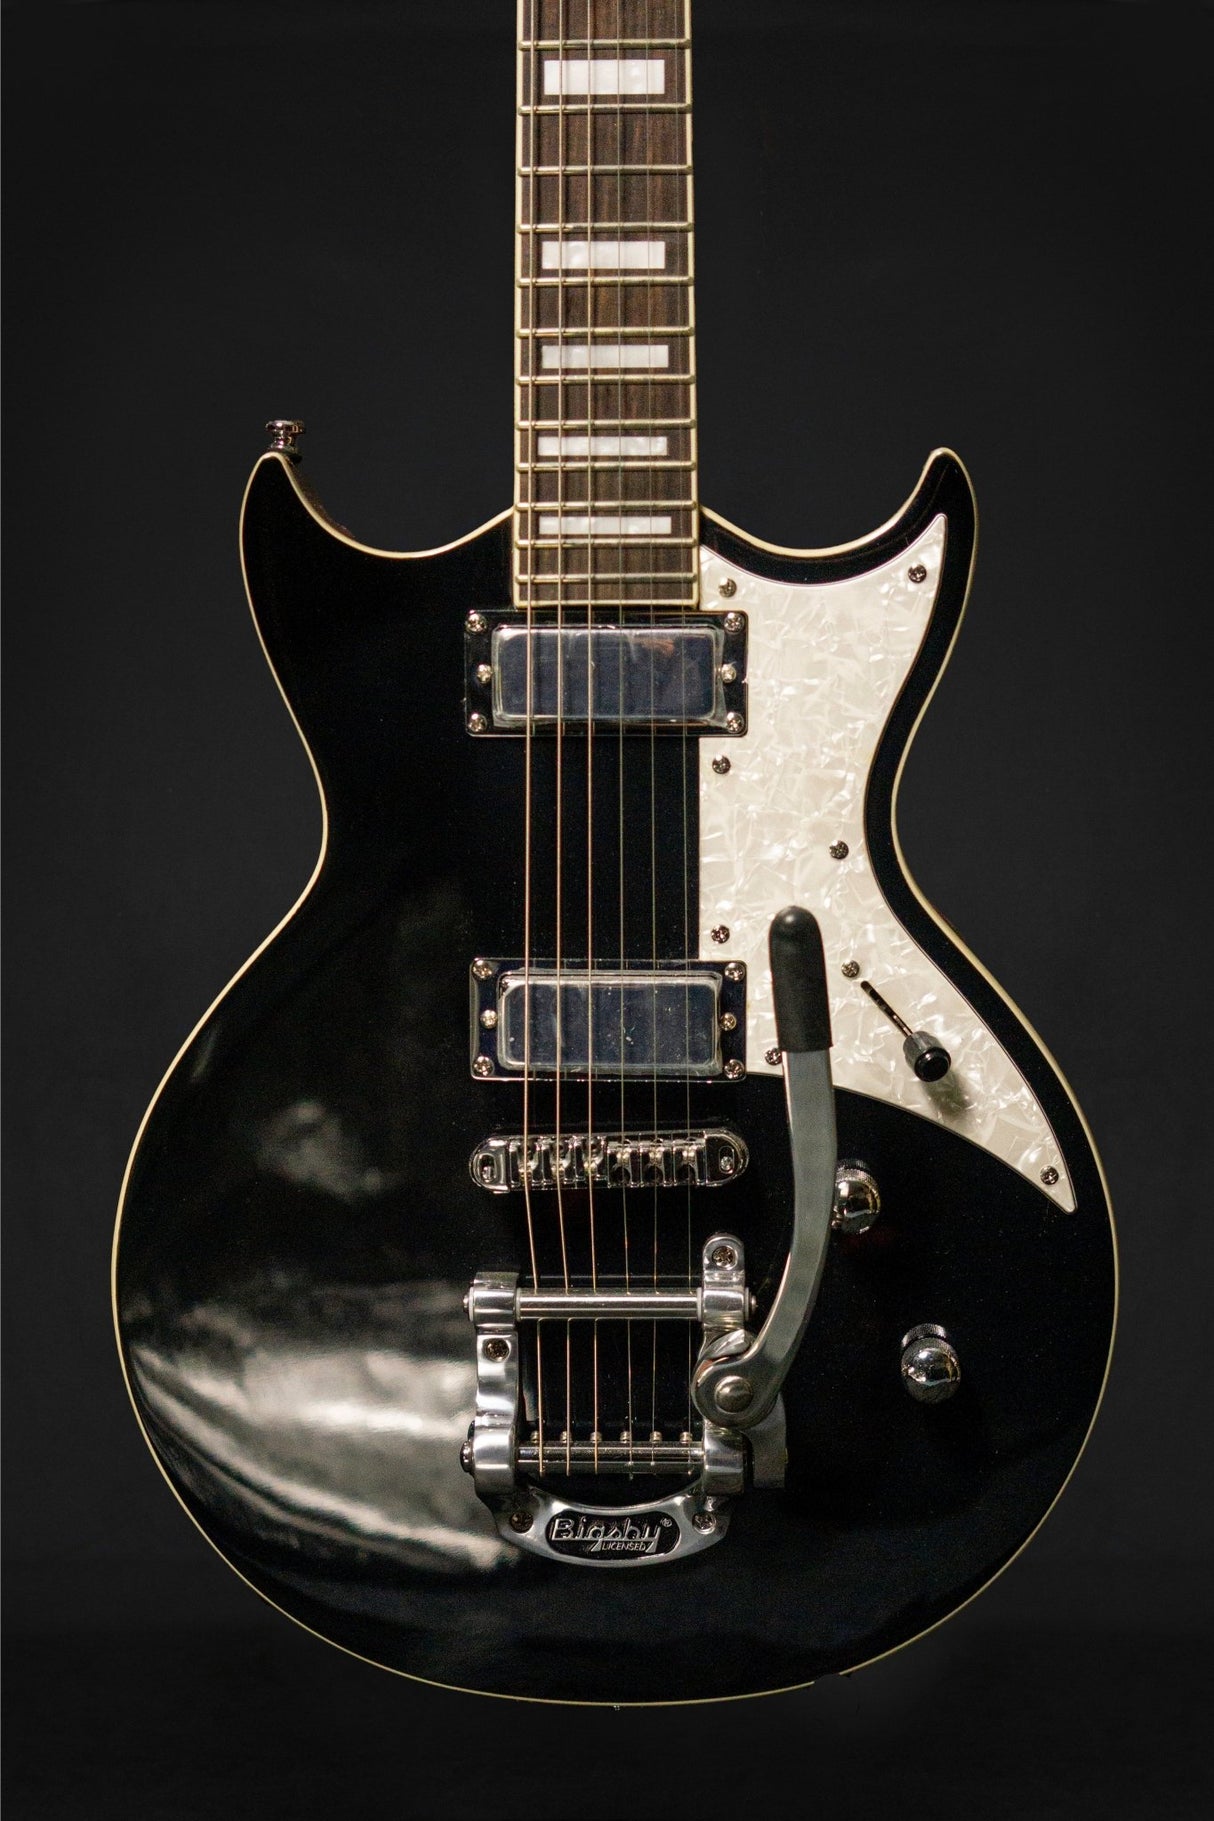 Aria 212 MKII Bowery Black - Electric Guitars - Aria